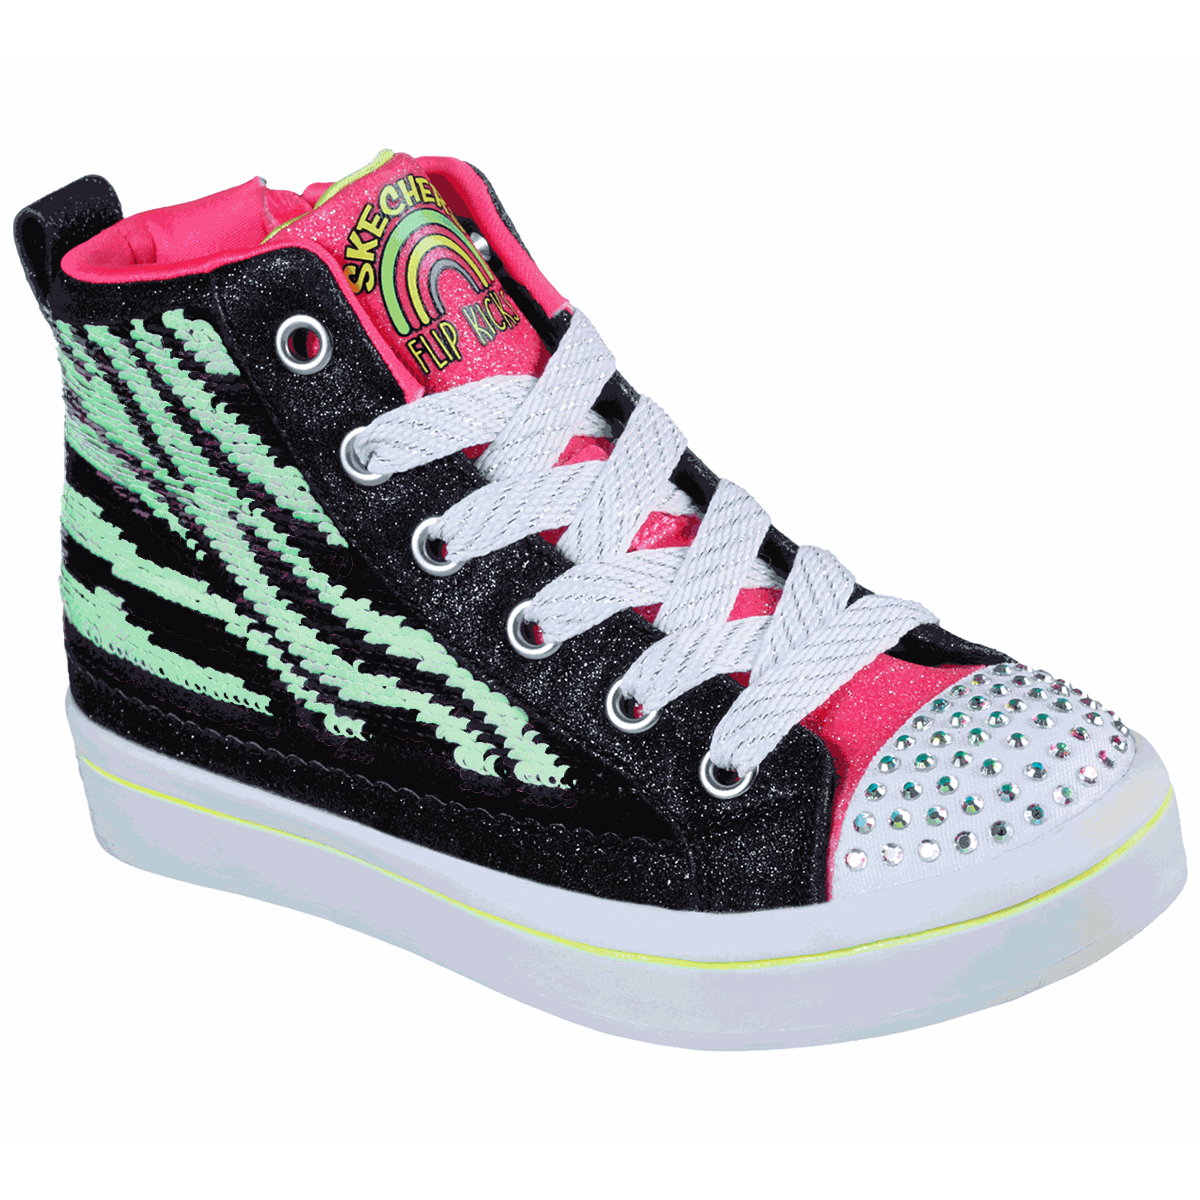 Skechers Girls' Twi-Lites 2.0 Reversible Sequin Zebra Hi Top Sneakers - Black, 1